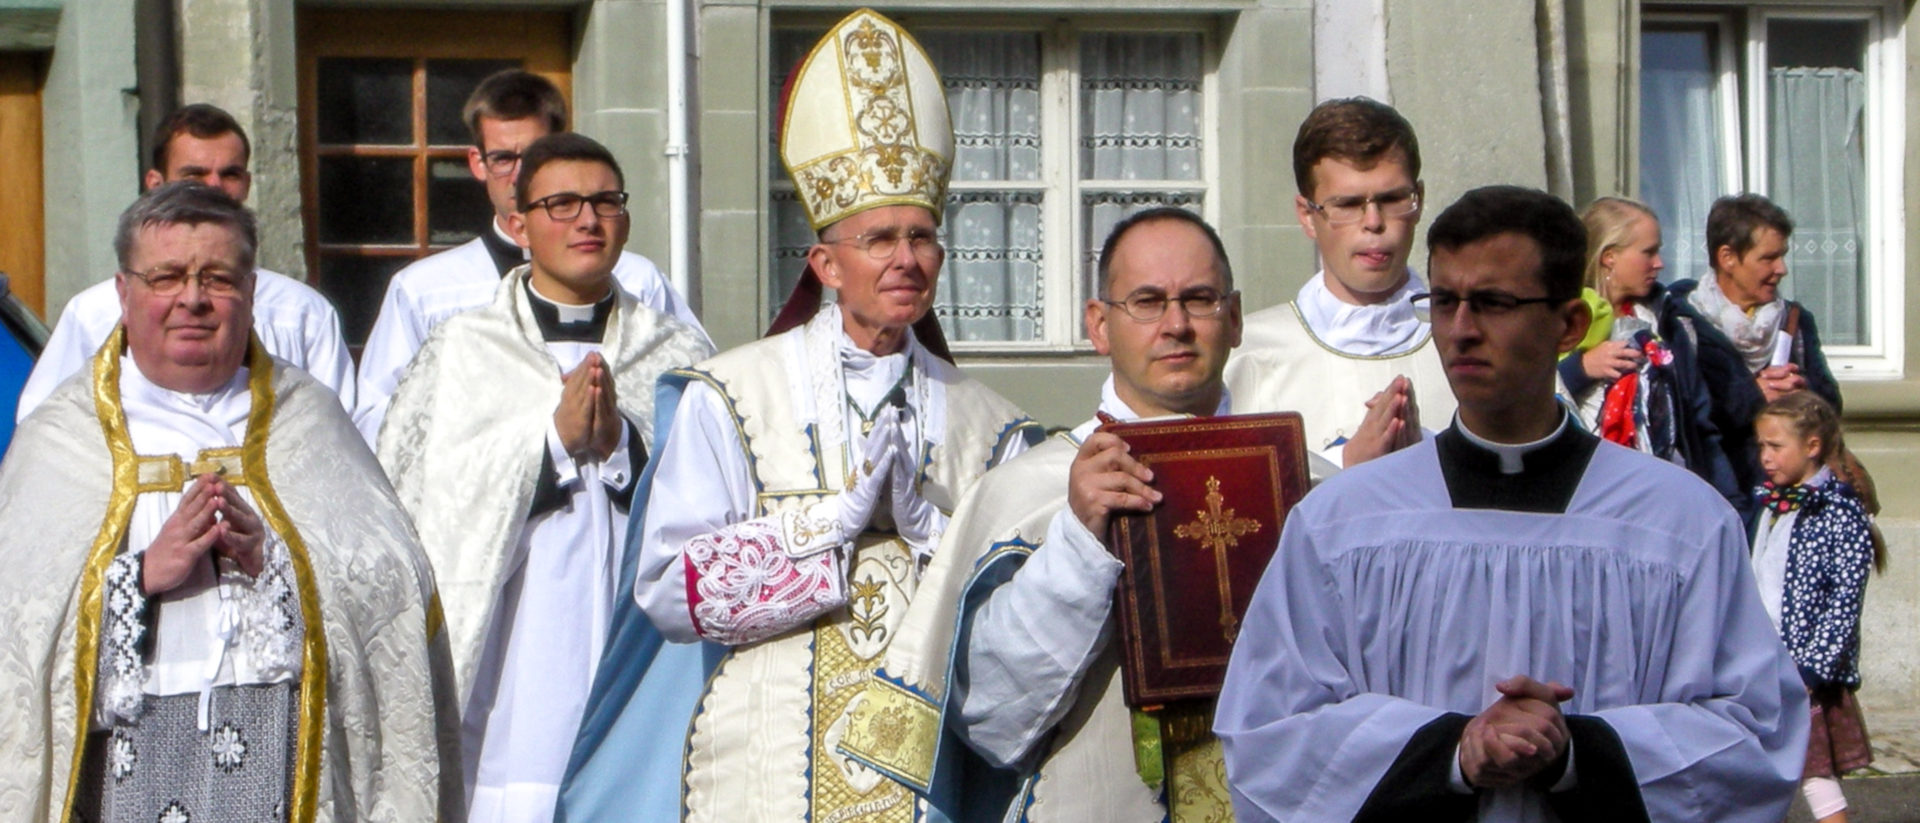 Prozession der Priesterbruderschaft in Freiburg - mit Bischof Bernard Tissier de Mallerais